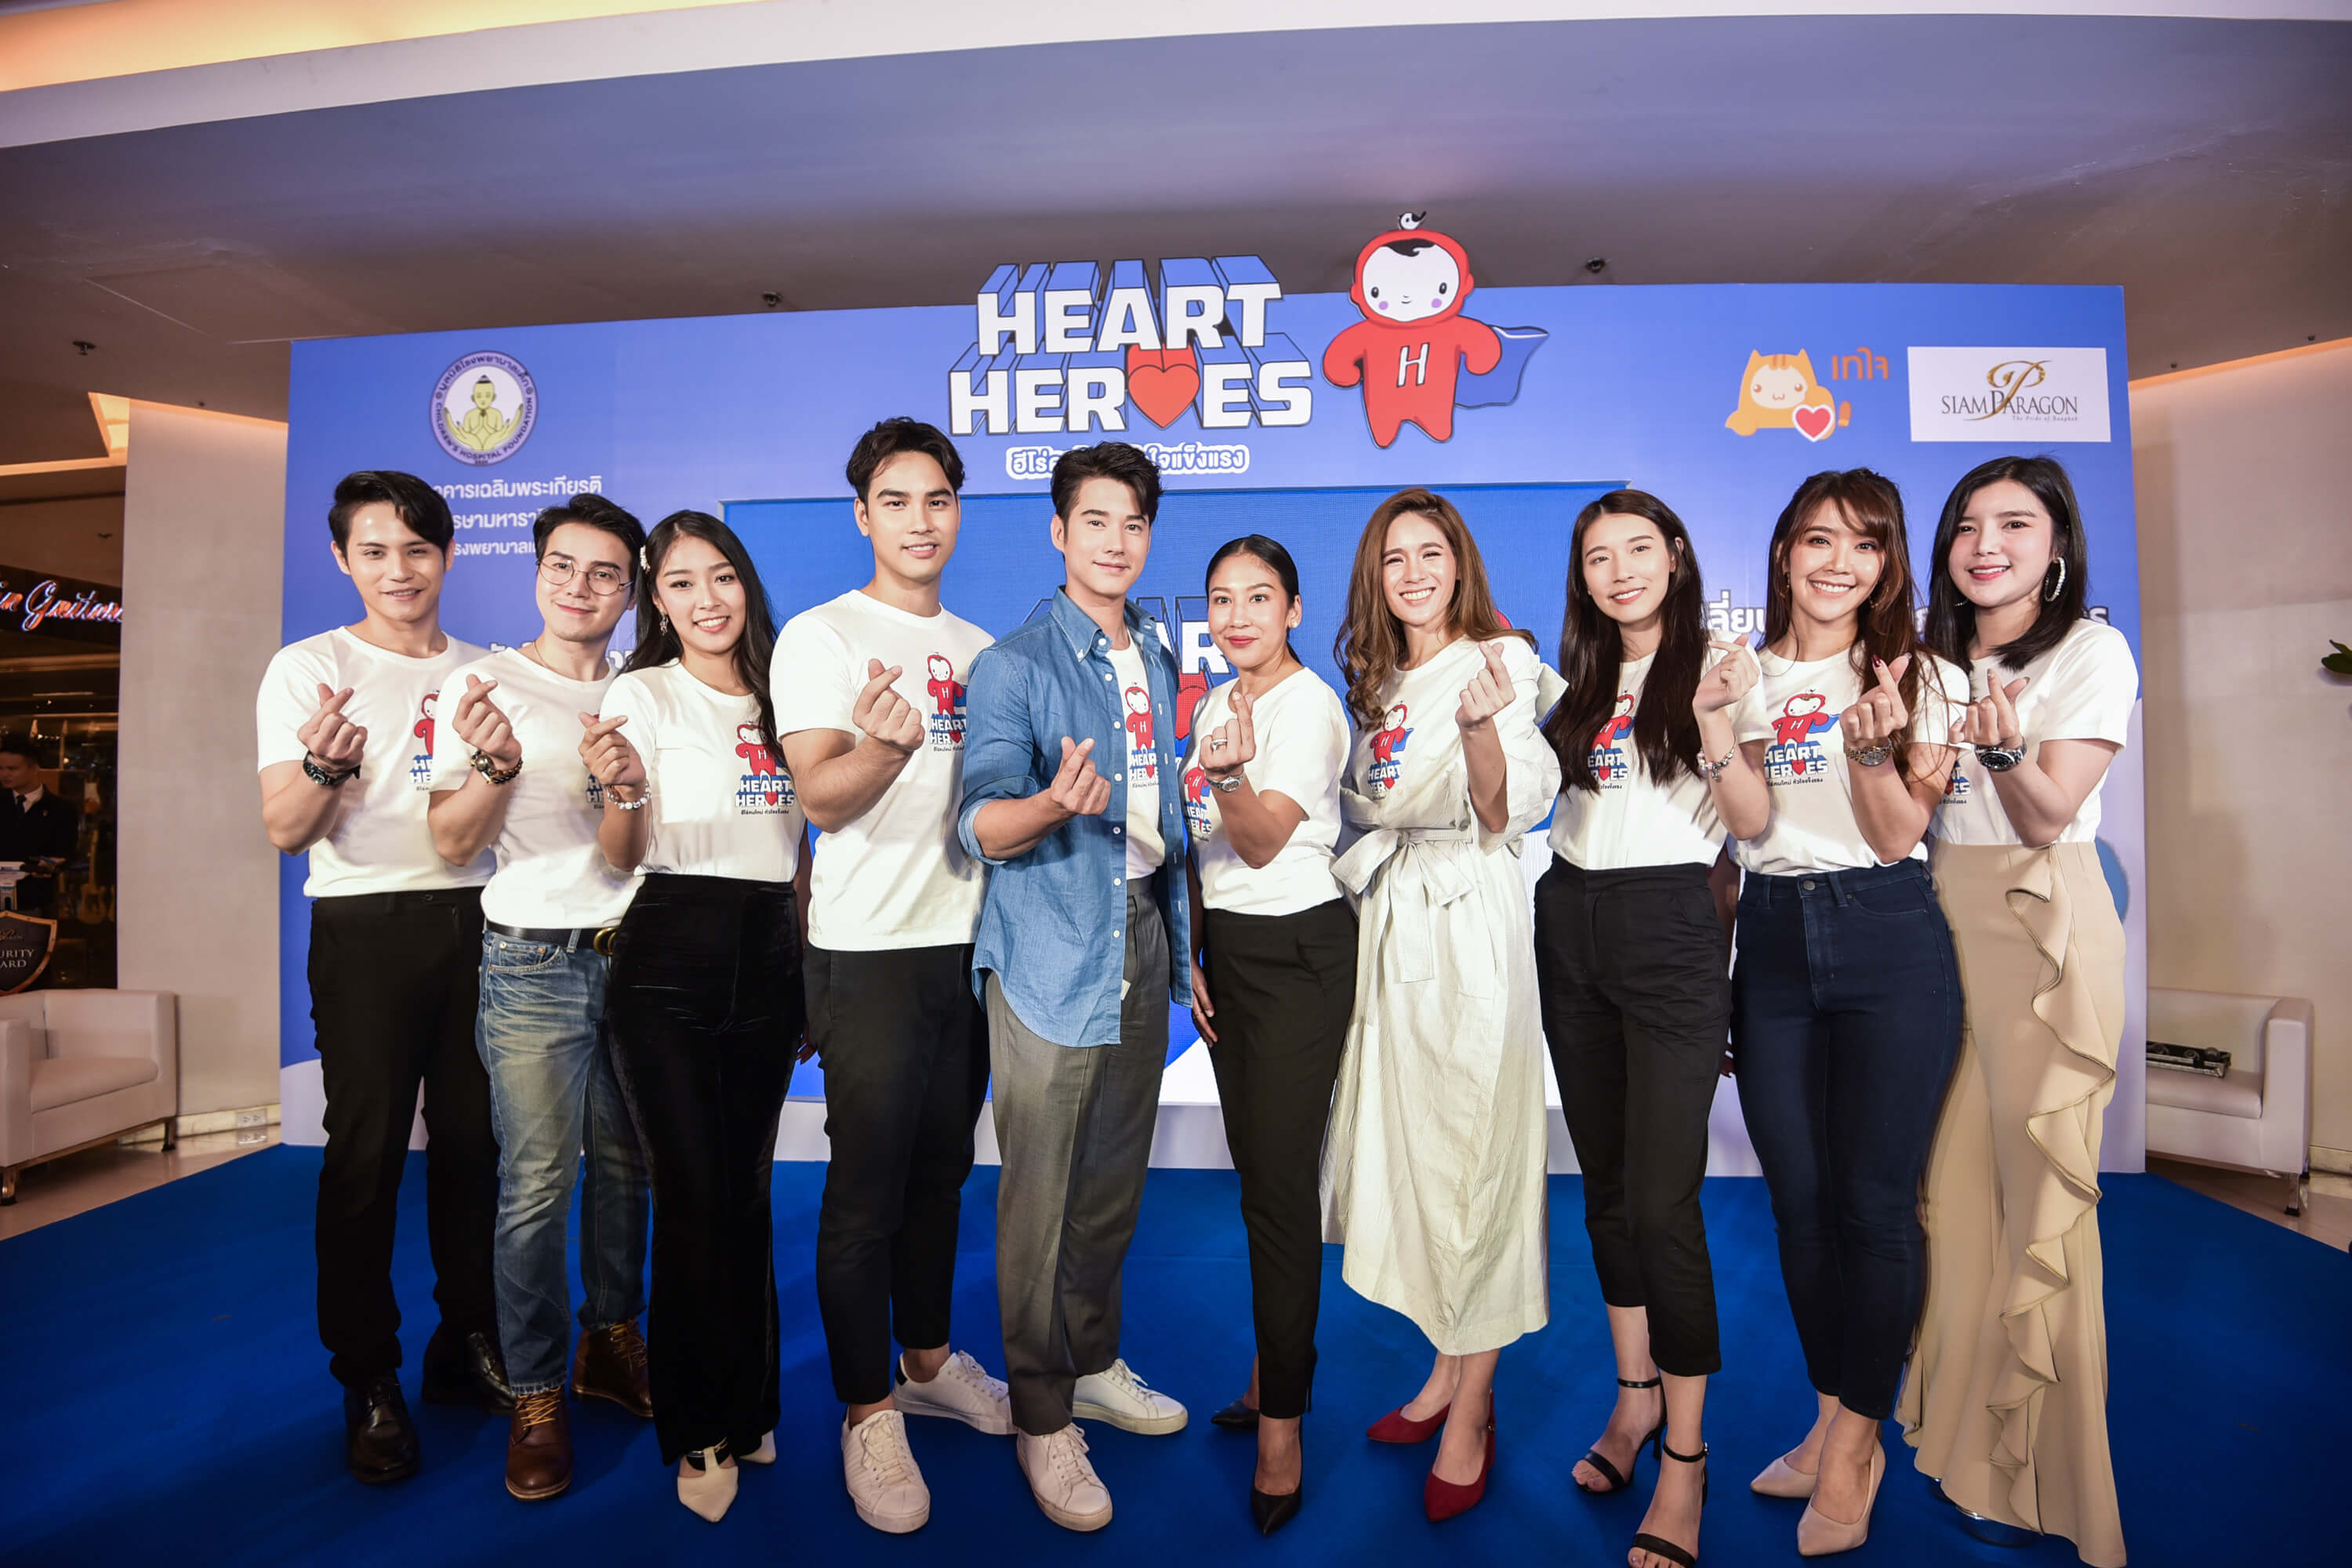 งานแถลงข่าว โครงการ “Heart Heroes ฮีโร่คนใหม่ หัวใจแข็งแรง” เปลี่ยนผู้ป่วยเด็กหัวใจพิการแต่กำเนิด เป็นฮีโร่สุขภาพดี